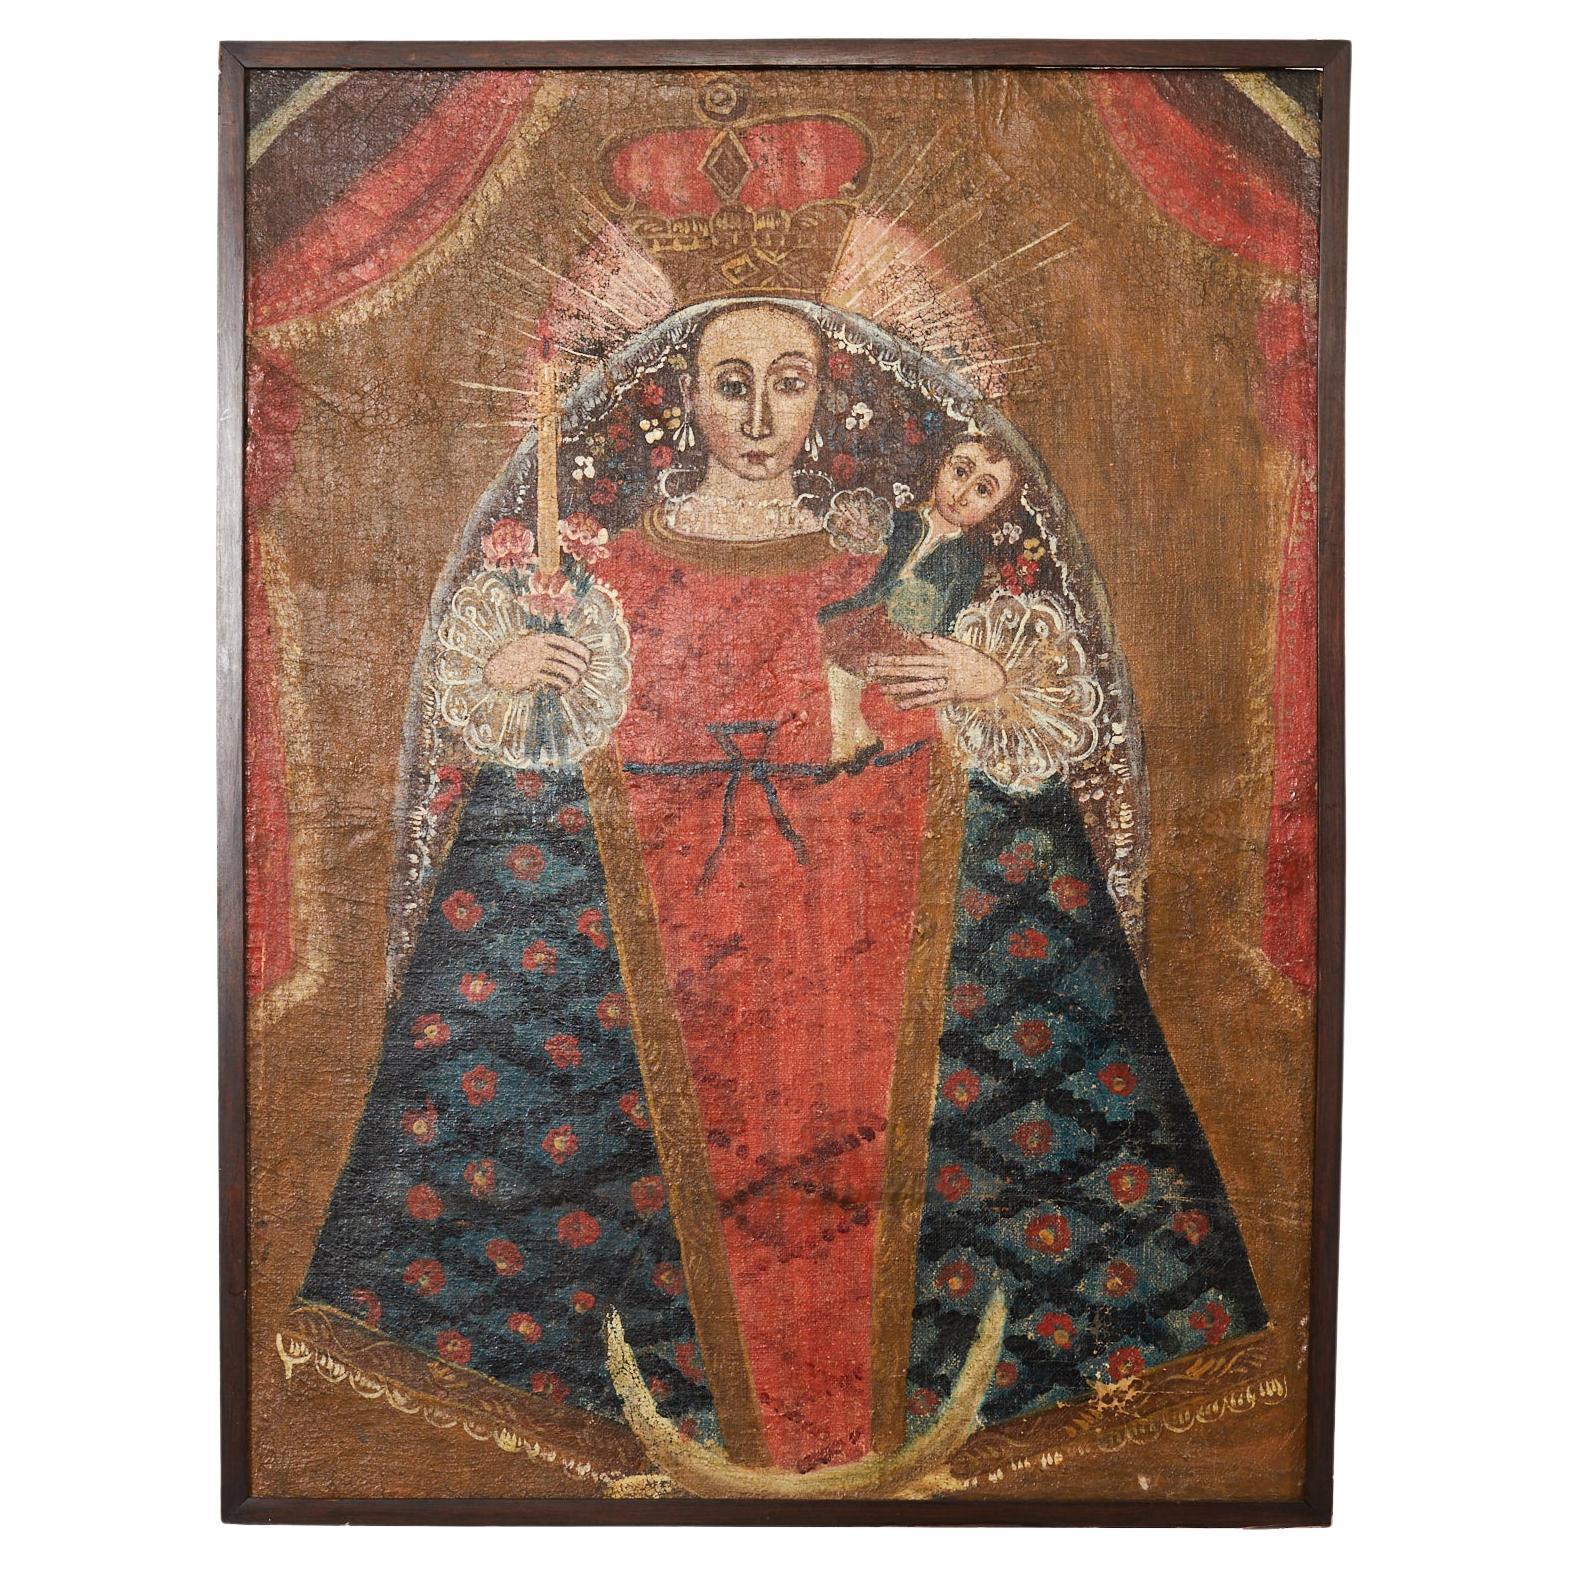 Peinture de la Madonna et de la Vierge de l'école coloniale espagnole de Cuzco